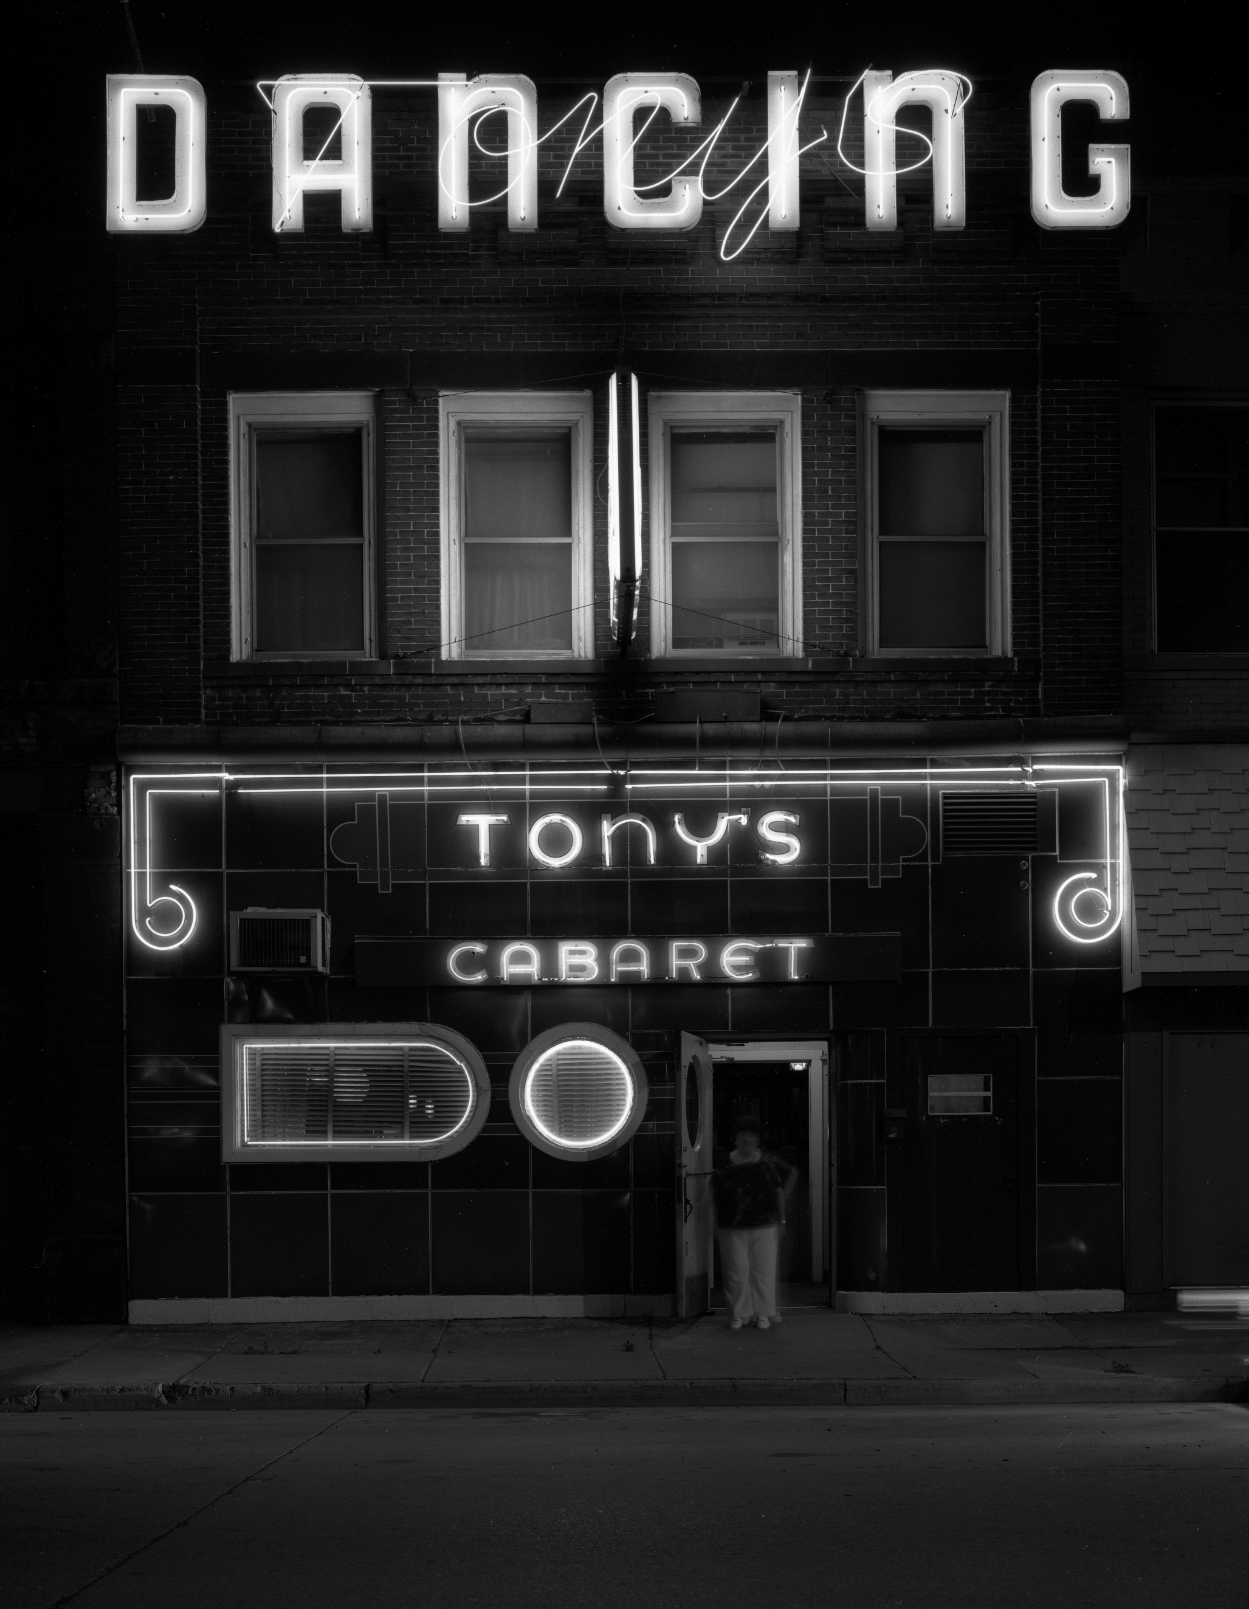 Tony's Cabaret, Superior,  Wisconsin, 1982. ©Kelly Povo